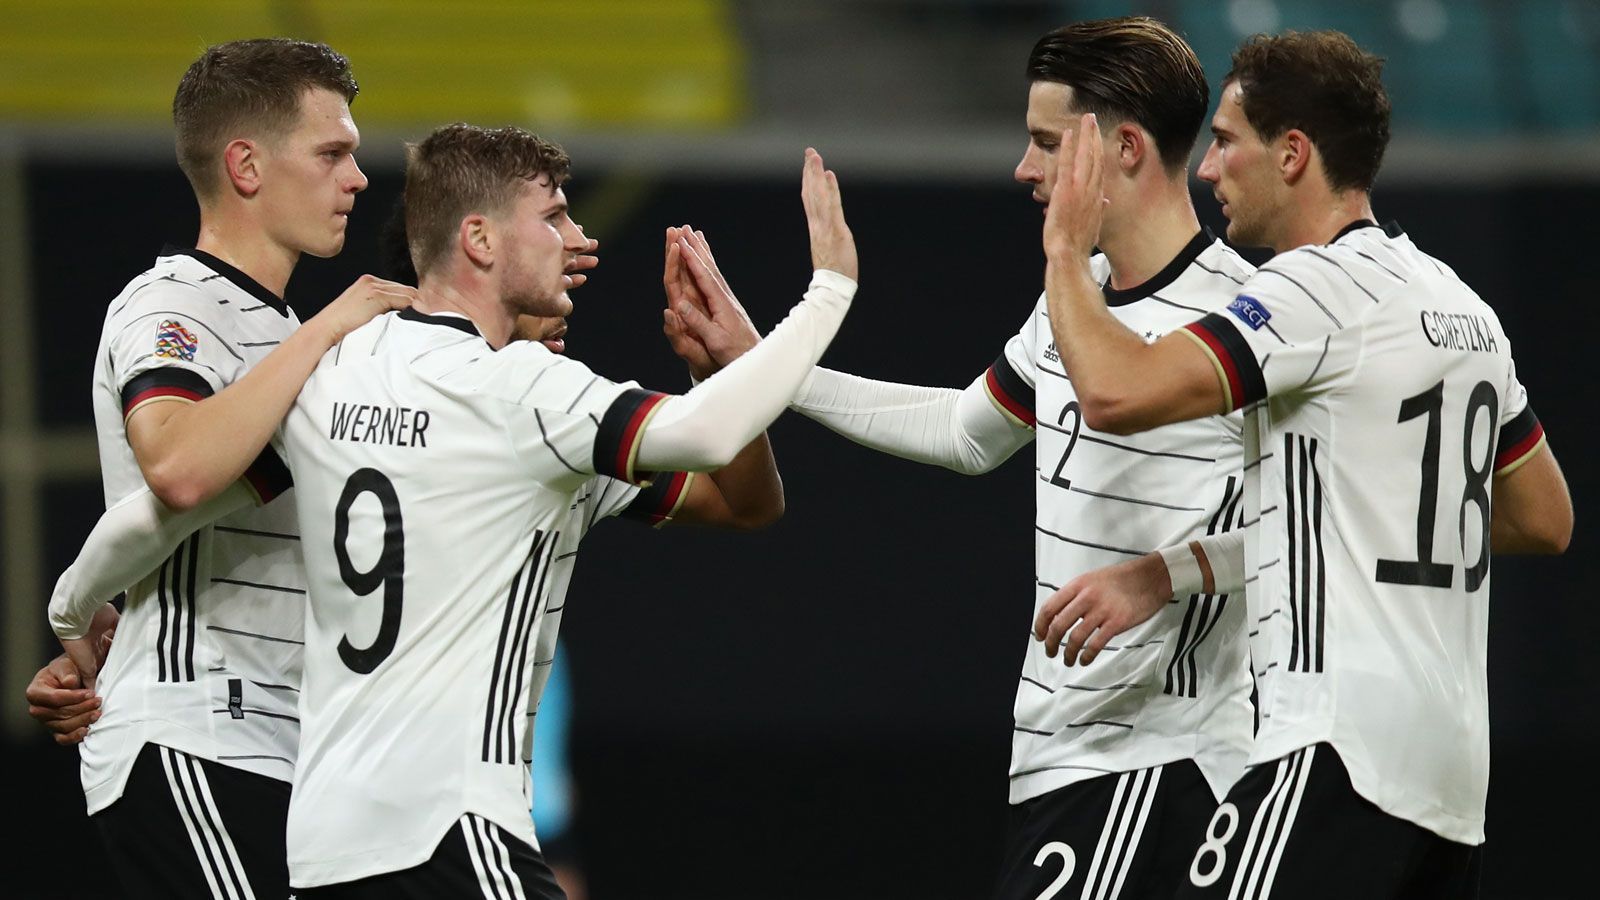 
                <strong>Zweiter Sieg! Deutschland gegen die Ukraine in der Einzelkritik</strong><br>
                Die deutsche Nationalmannschaft hat in der Nations League im fünften Gruppenspiel den zweiten Sieg gefeiert. Gegen die Ukraine gelang der DFB-Elf ein 3:1. Wir haben das Team benotet.
              